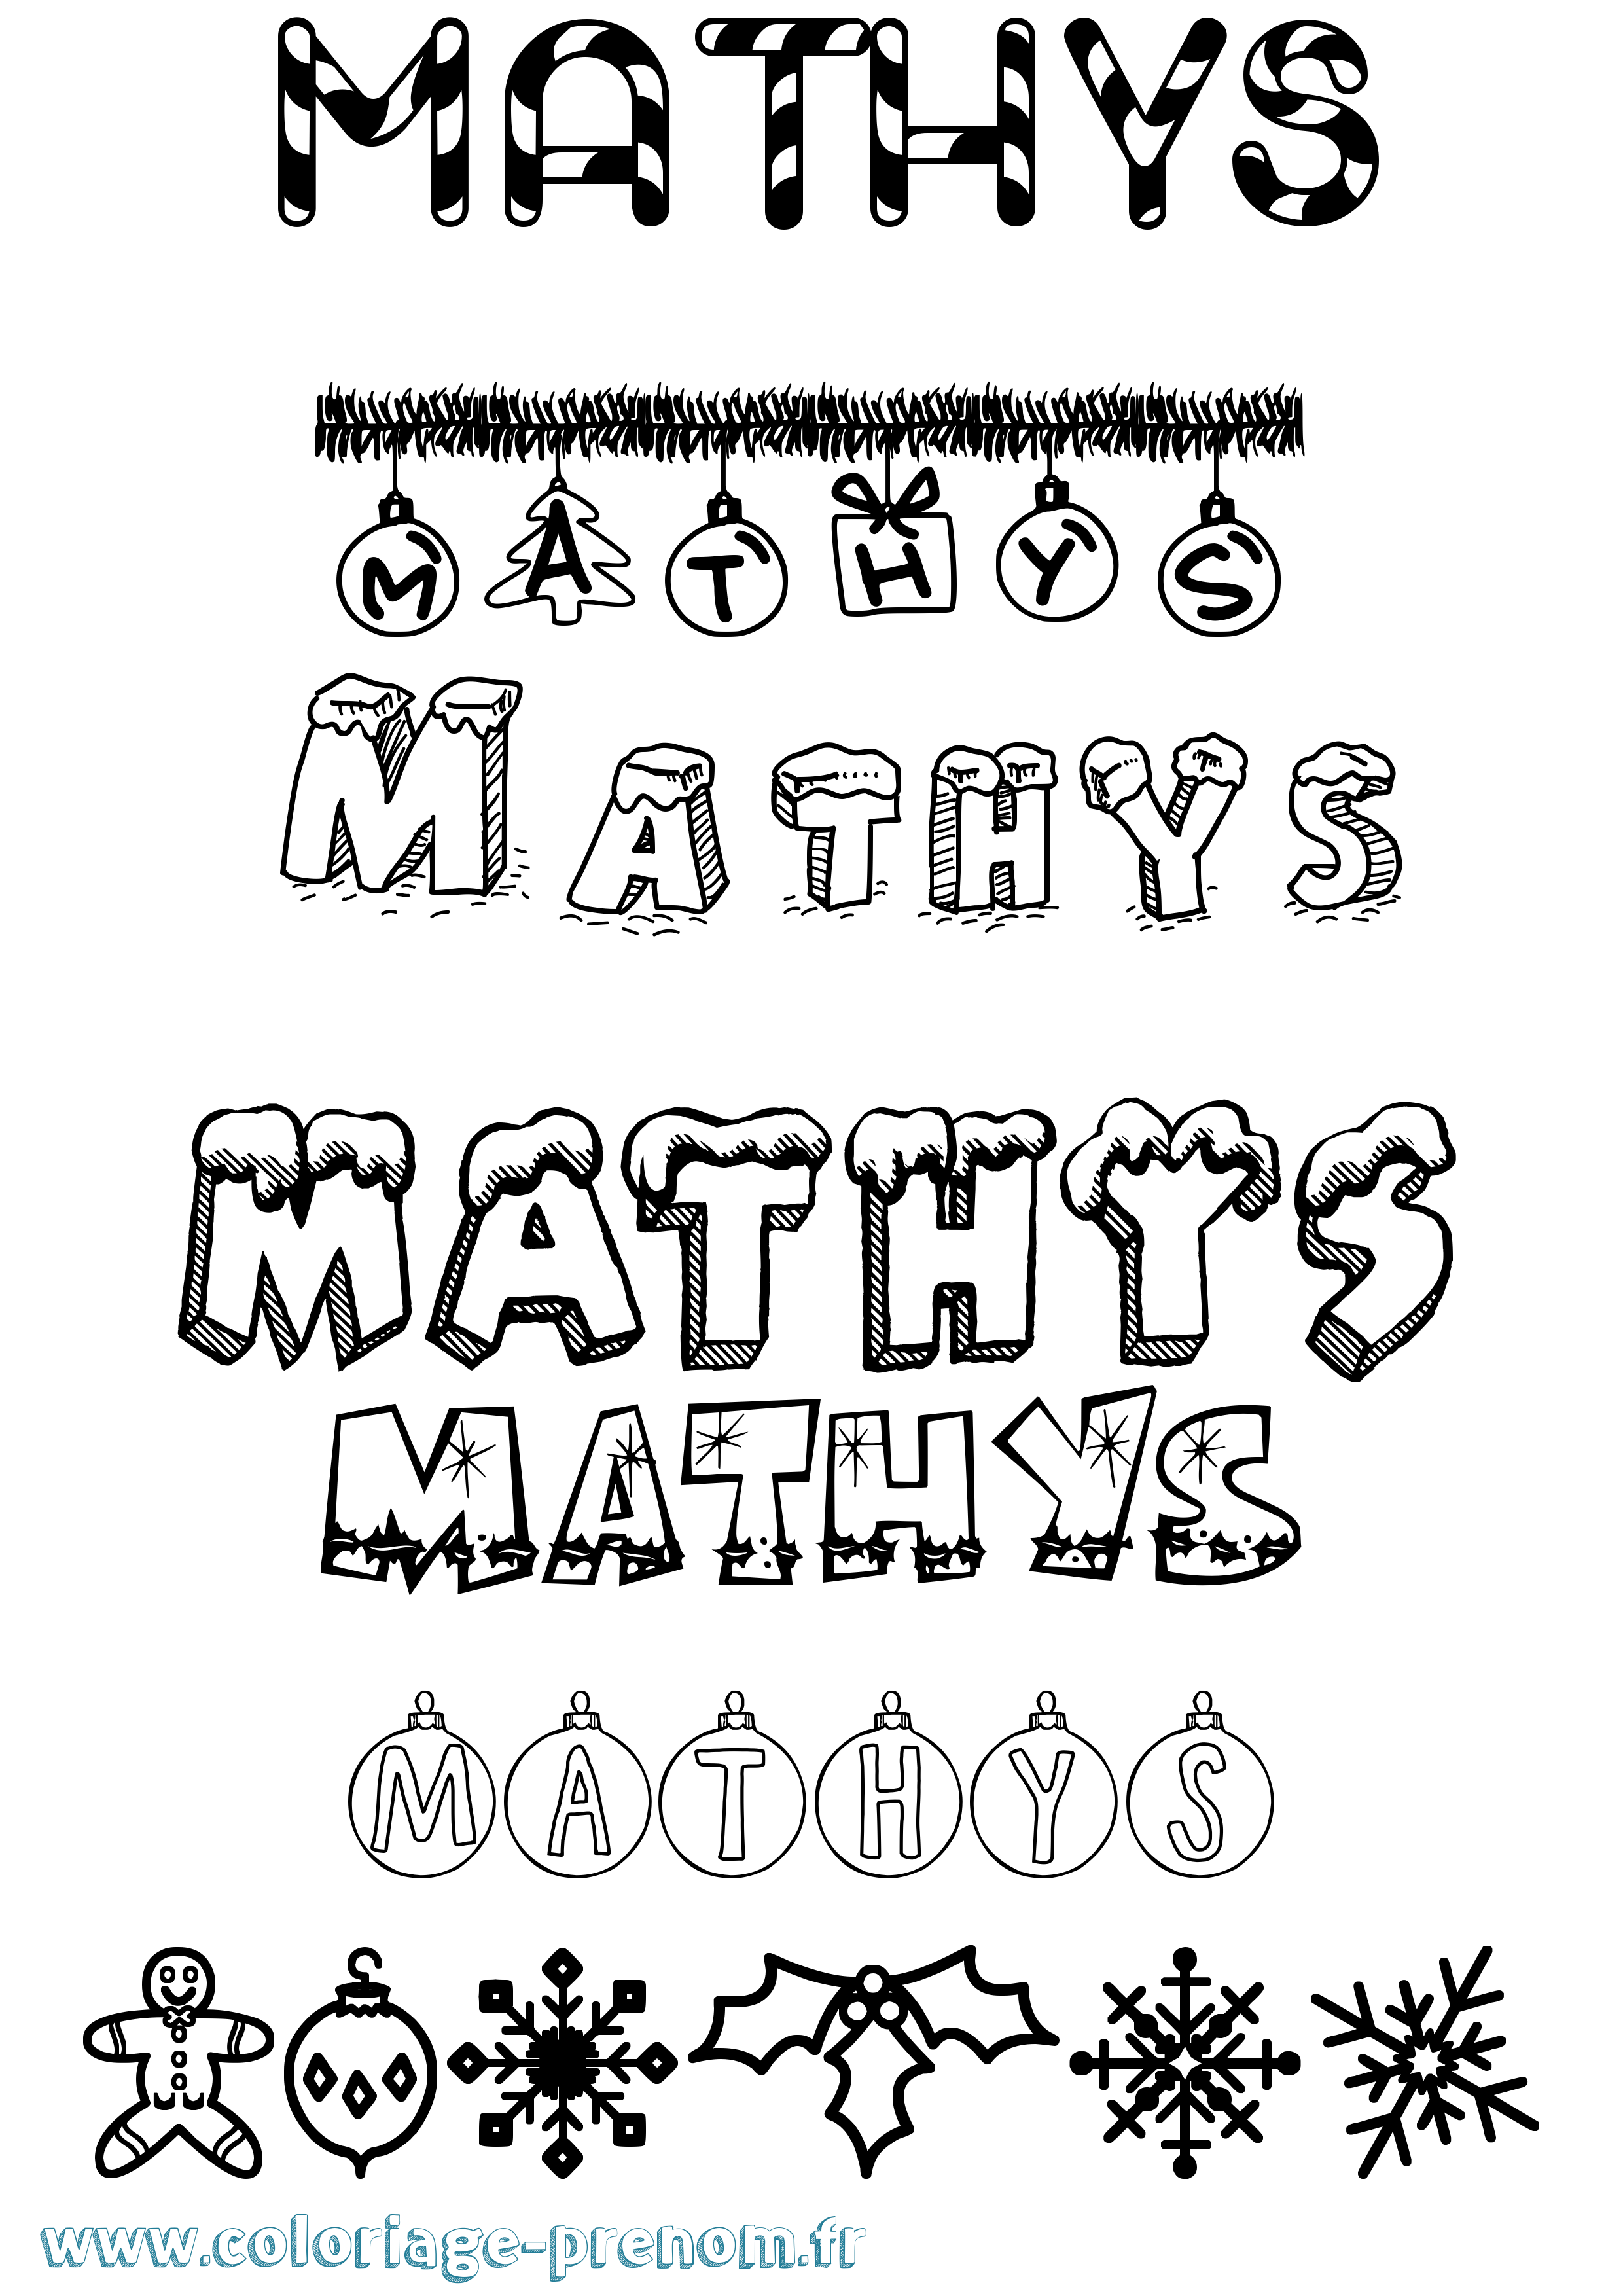 Coloriage prénom Mathys Noël